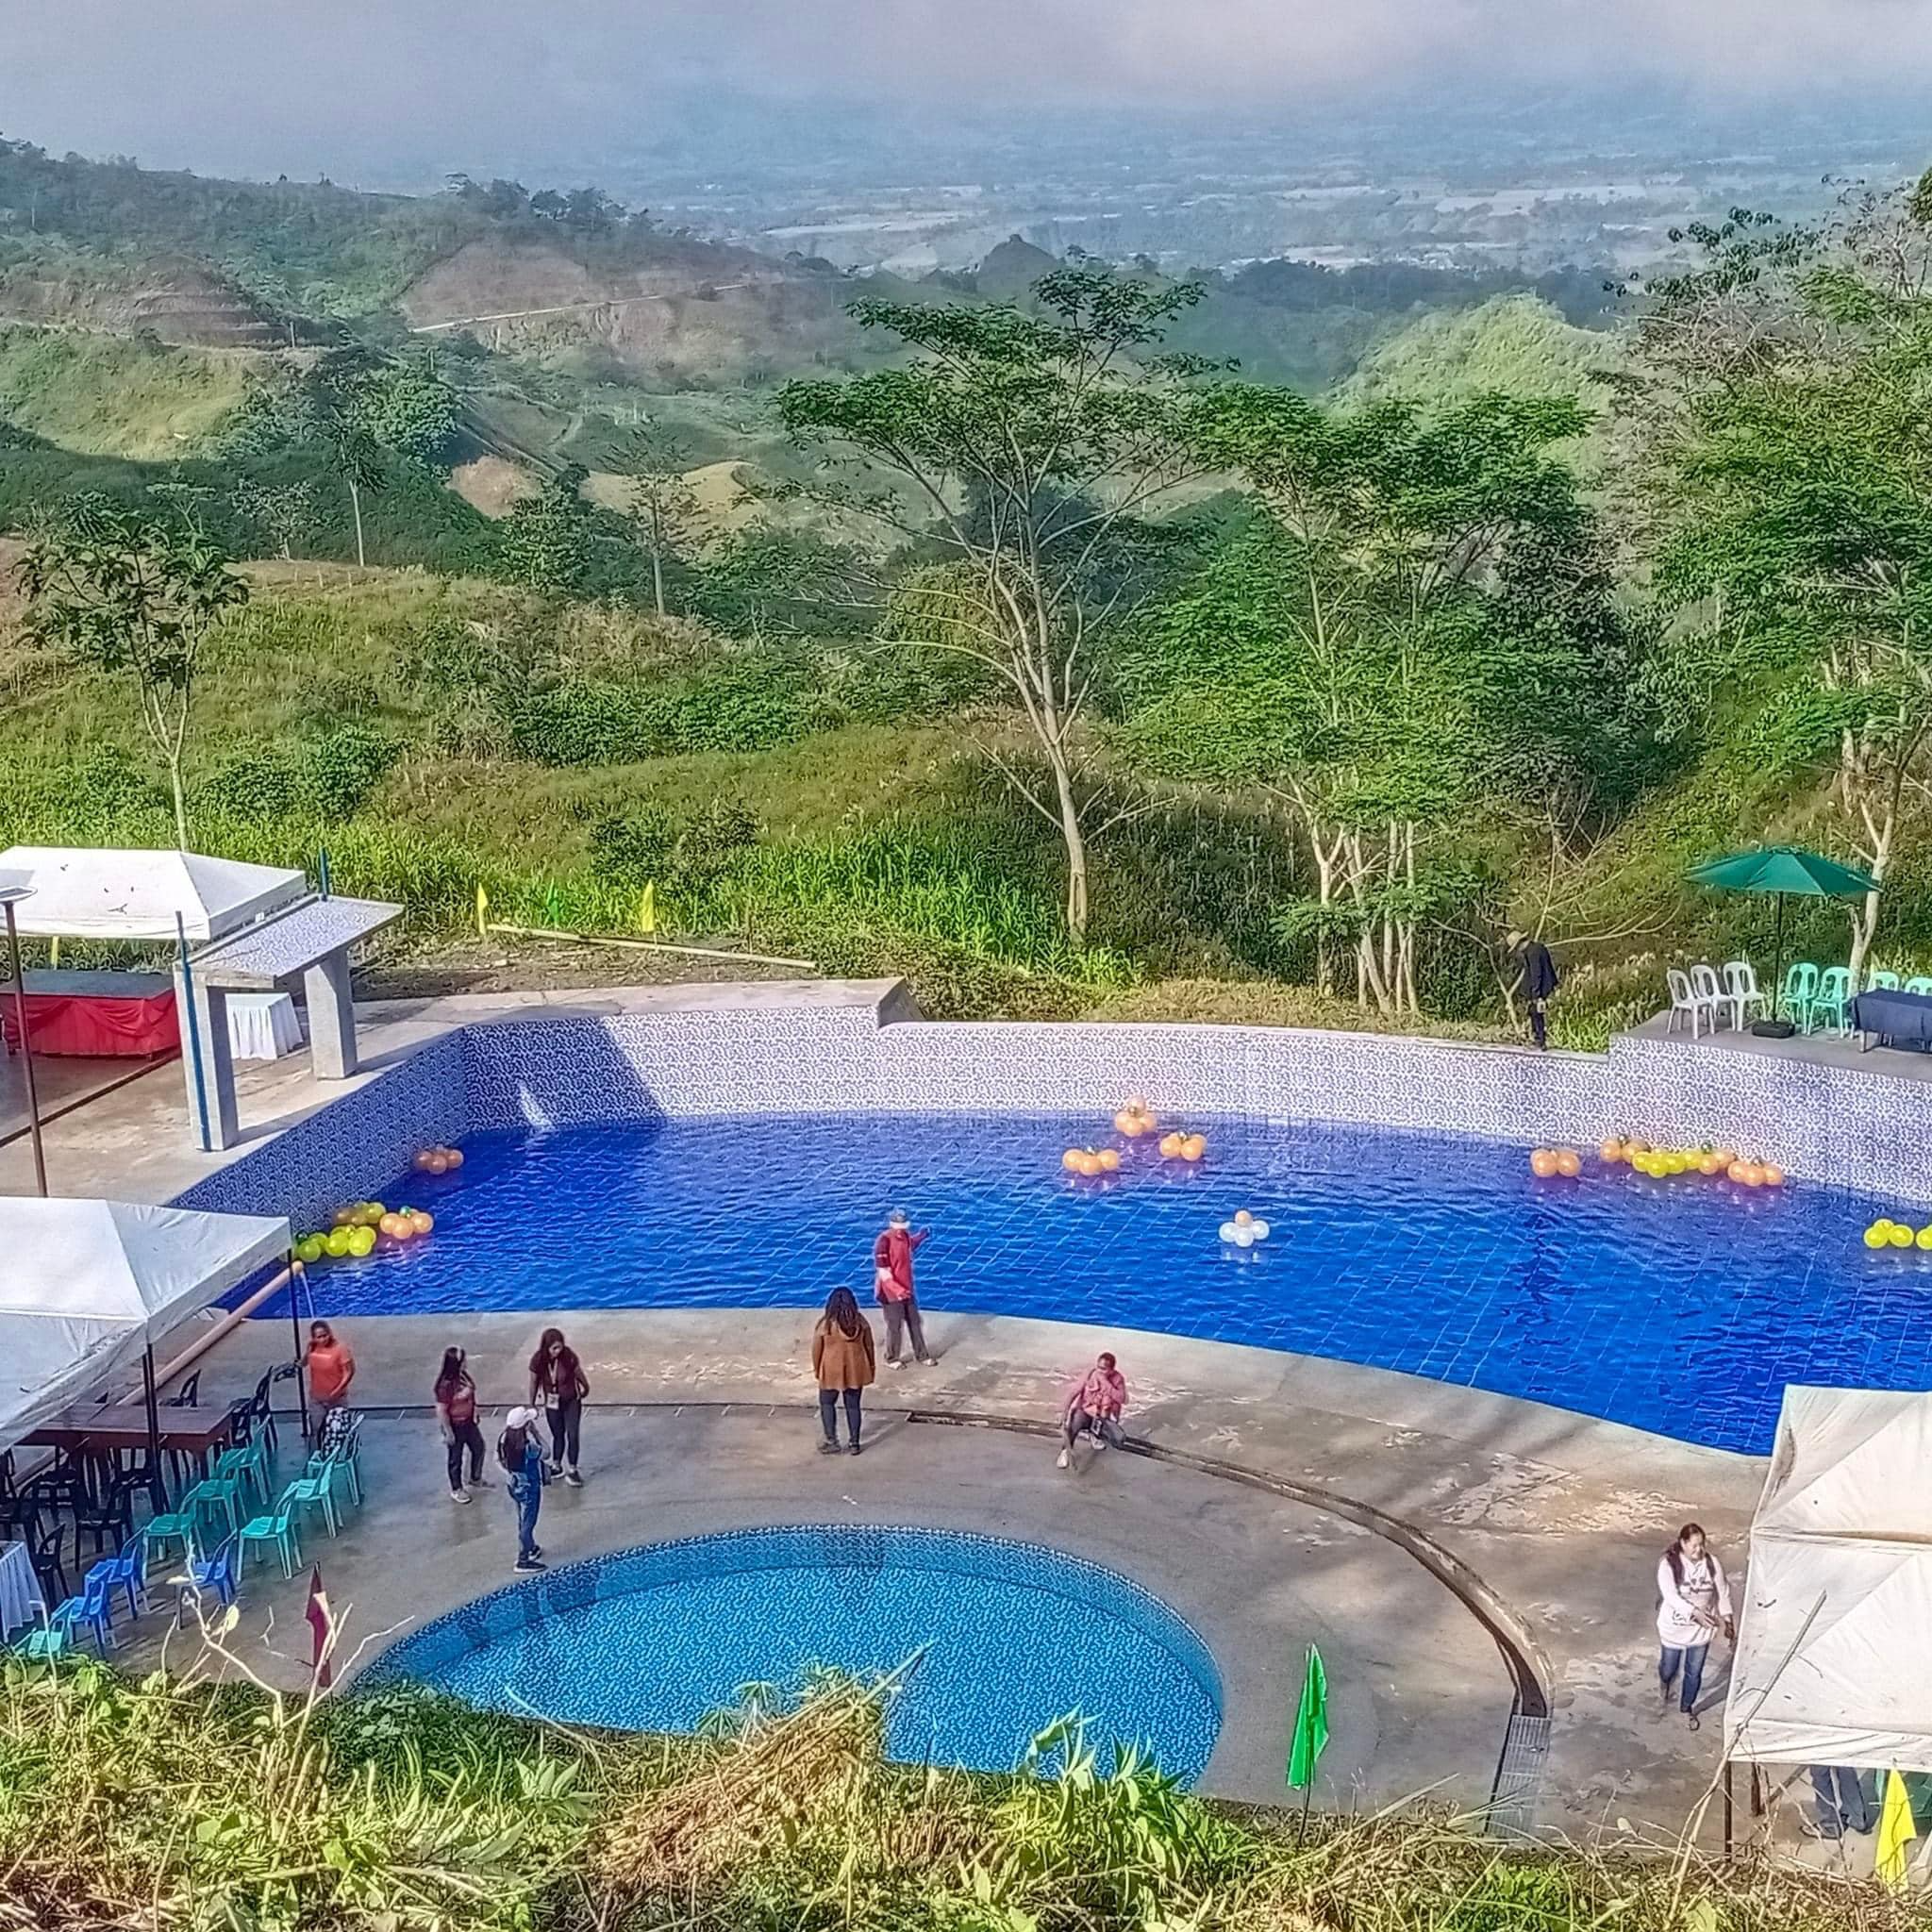 Cabanglasan town opens own LGU resort